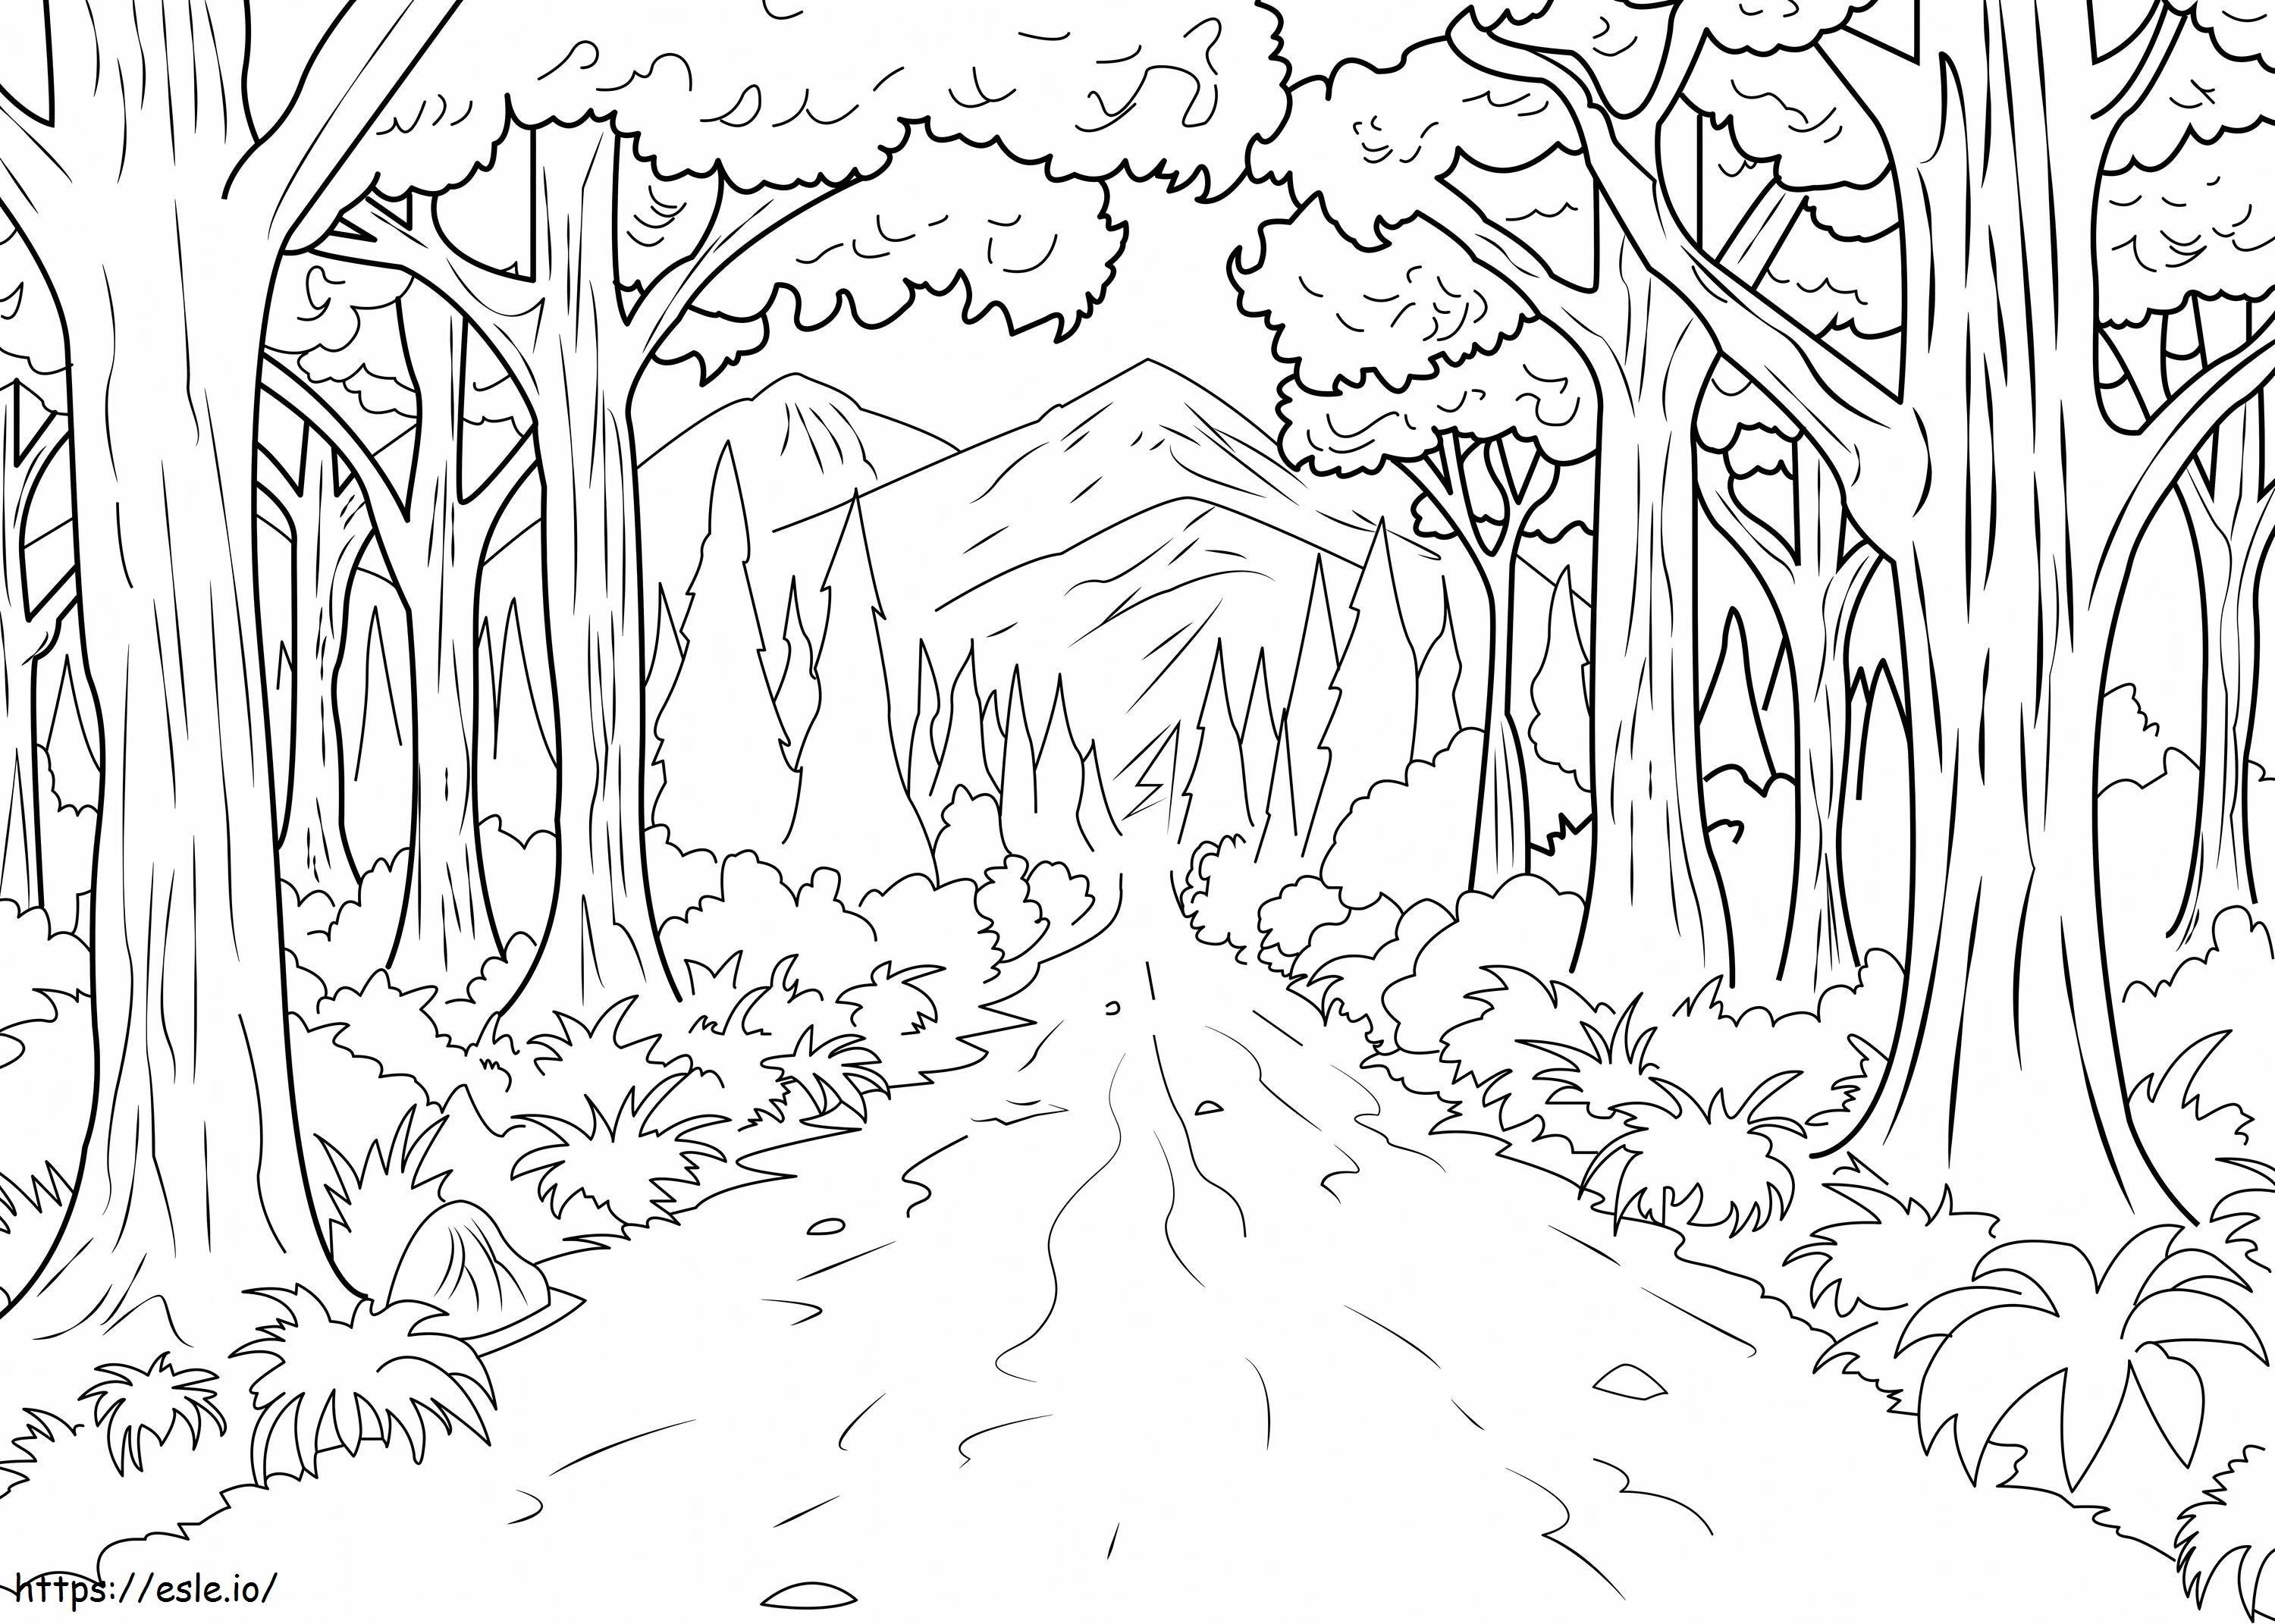 1540180579 Desen de pădure ușor 1 la scară 2 de colorat